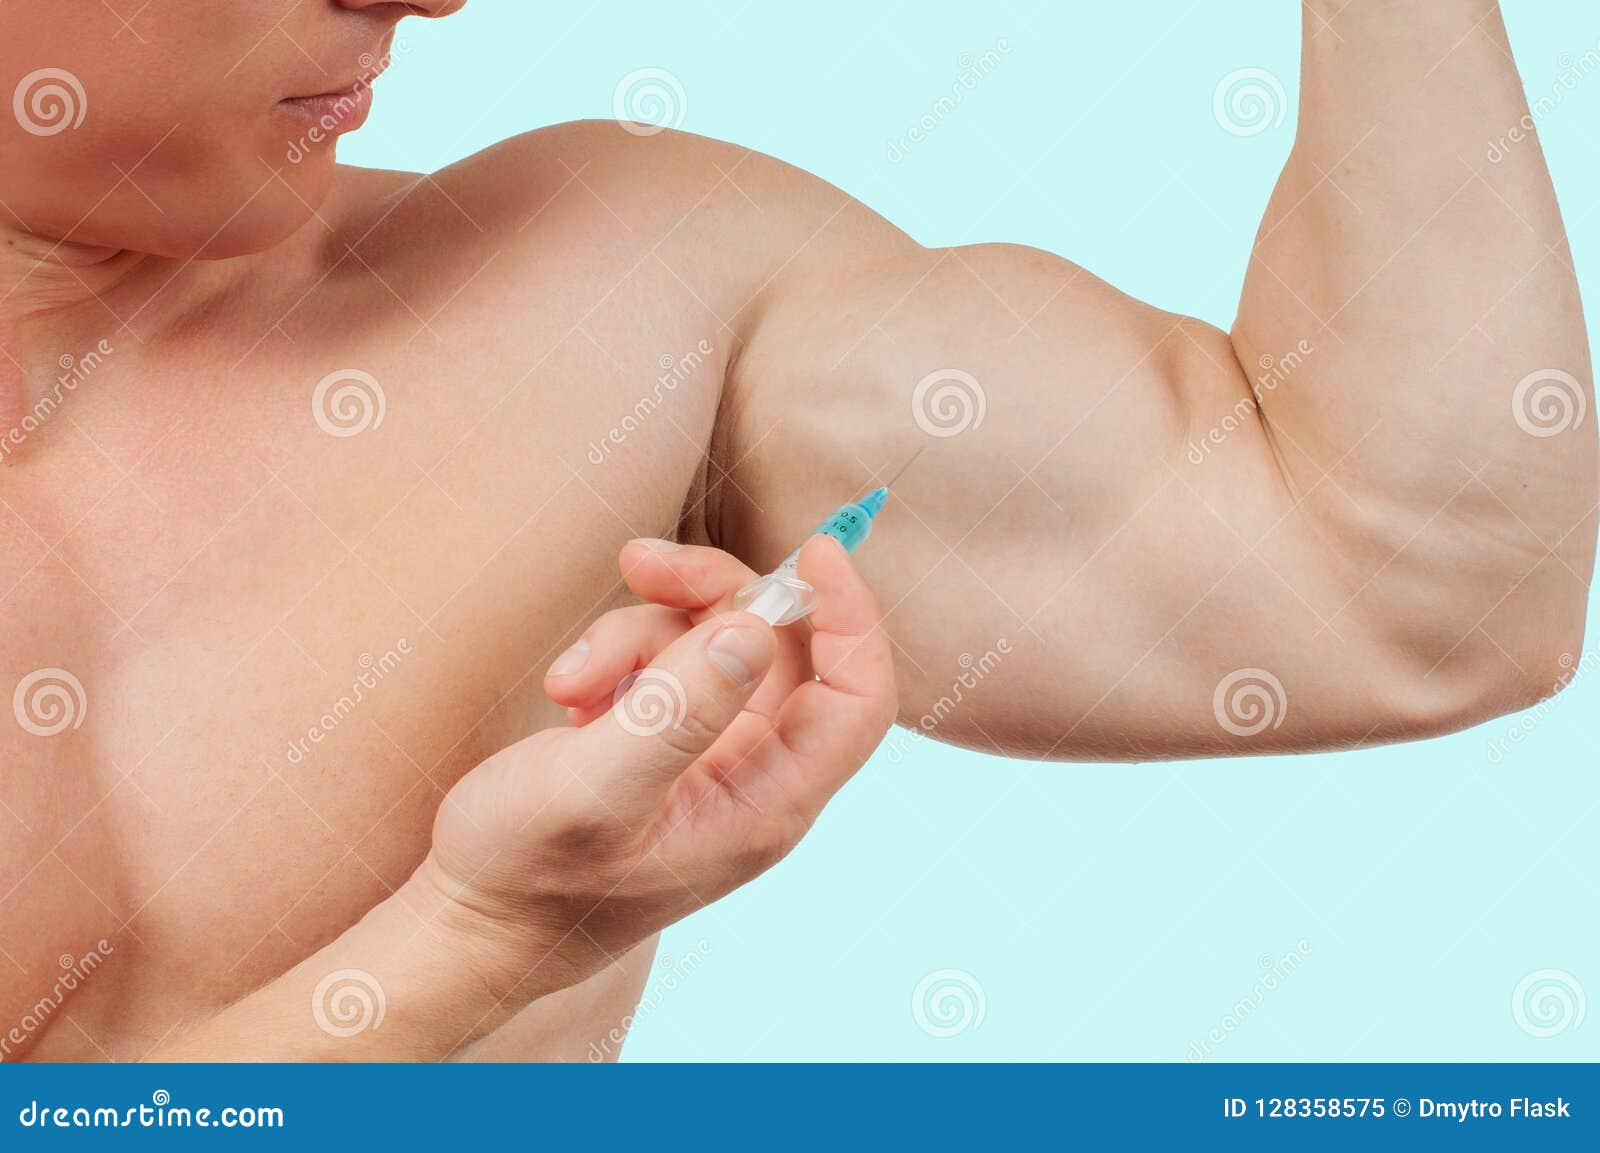 Usa muscoli con steroidi per far innamorare qualcuno di te